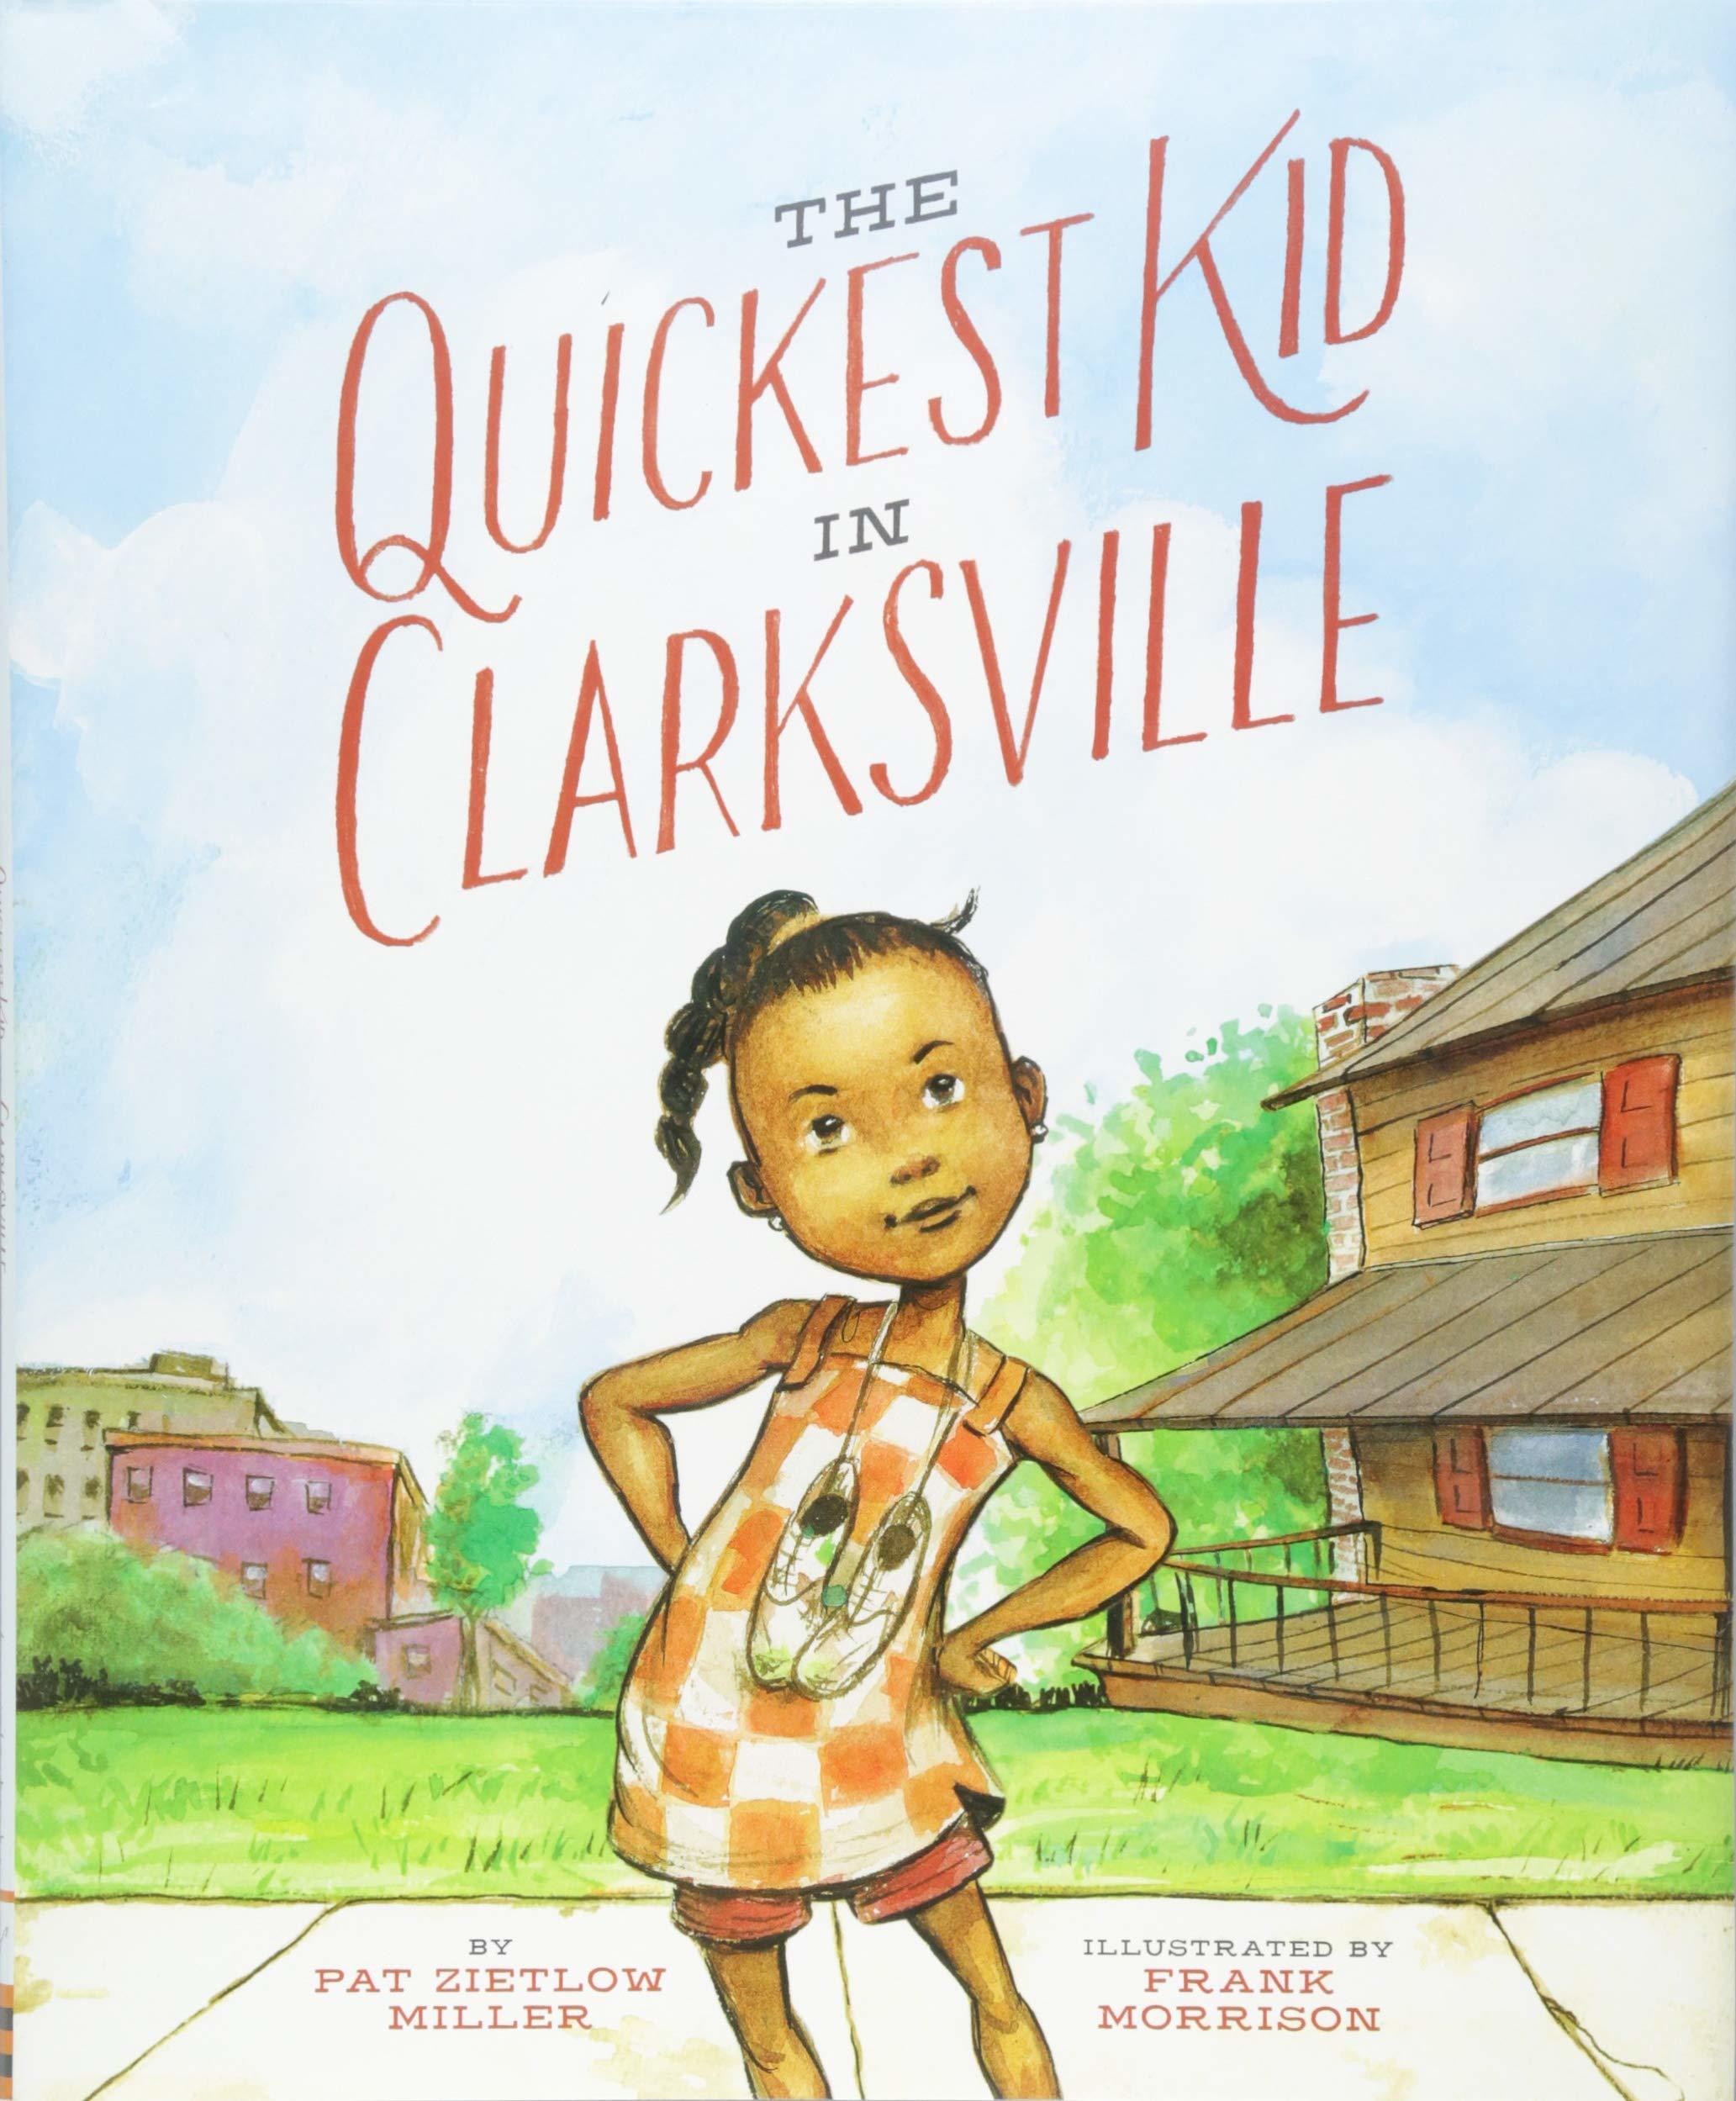 The Quickest Kid in Clarksville book